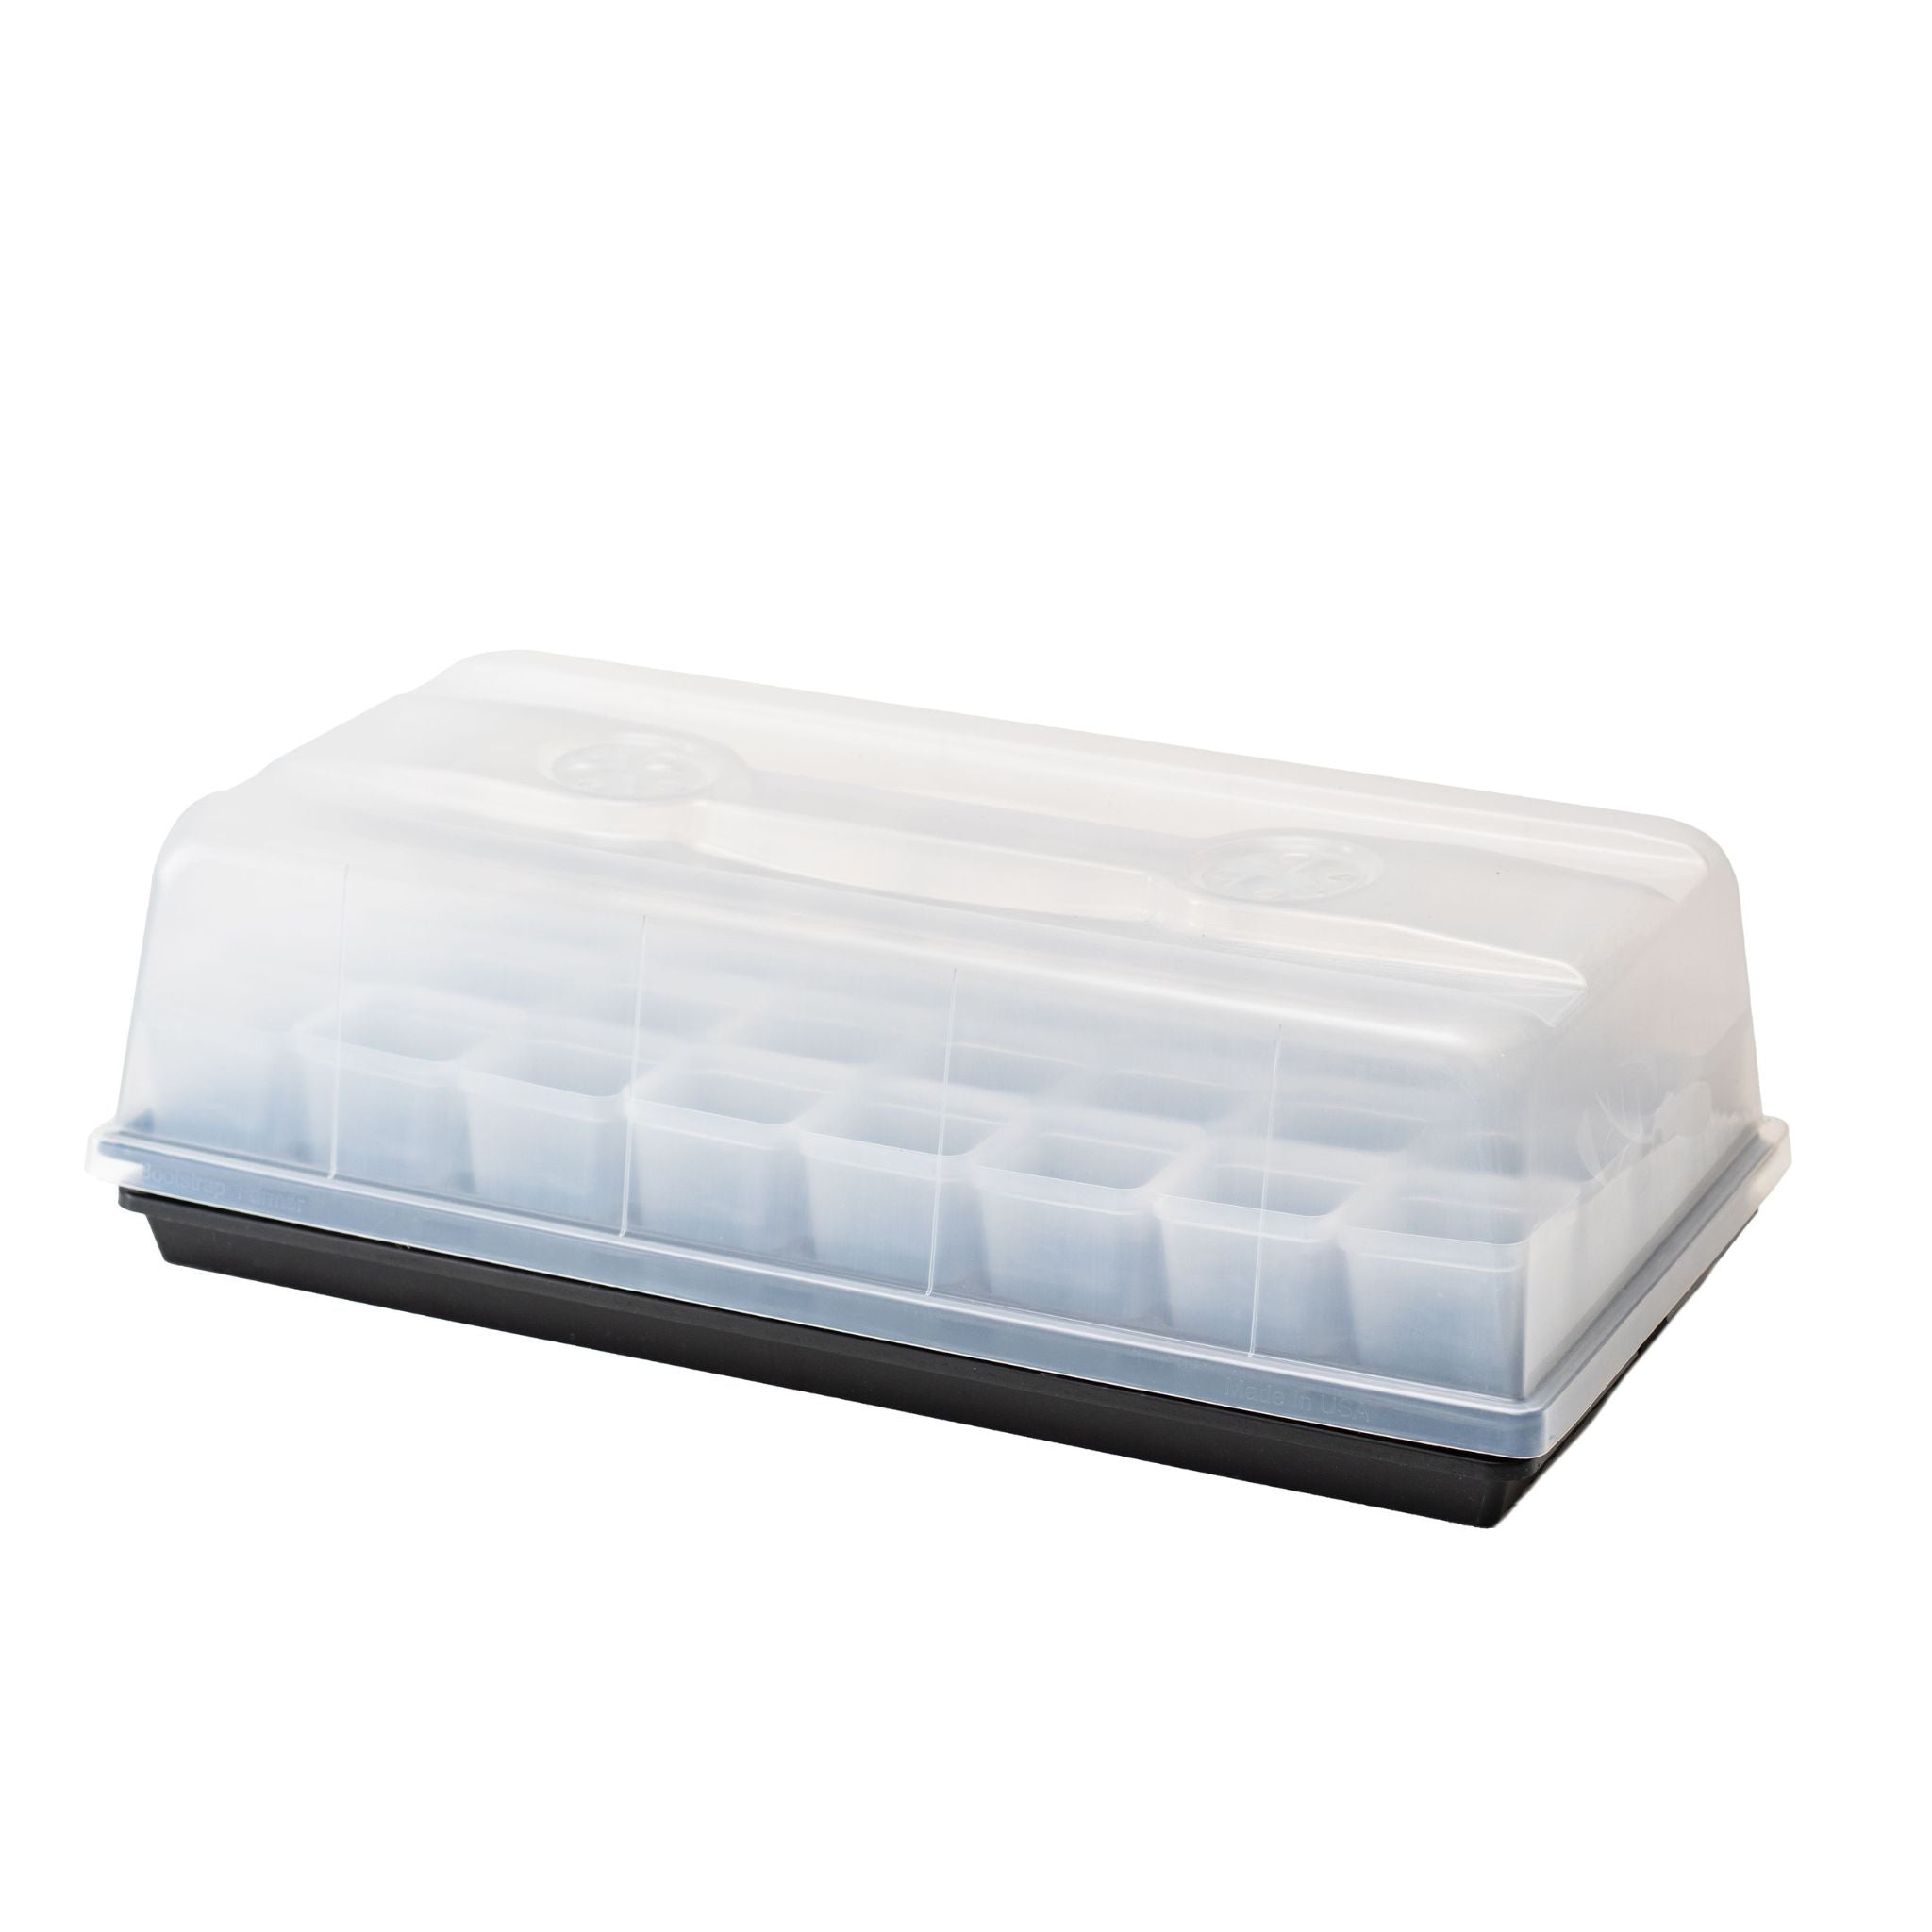 Styrofoam® Trays - Pack of 25 - STEM